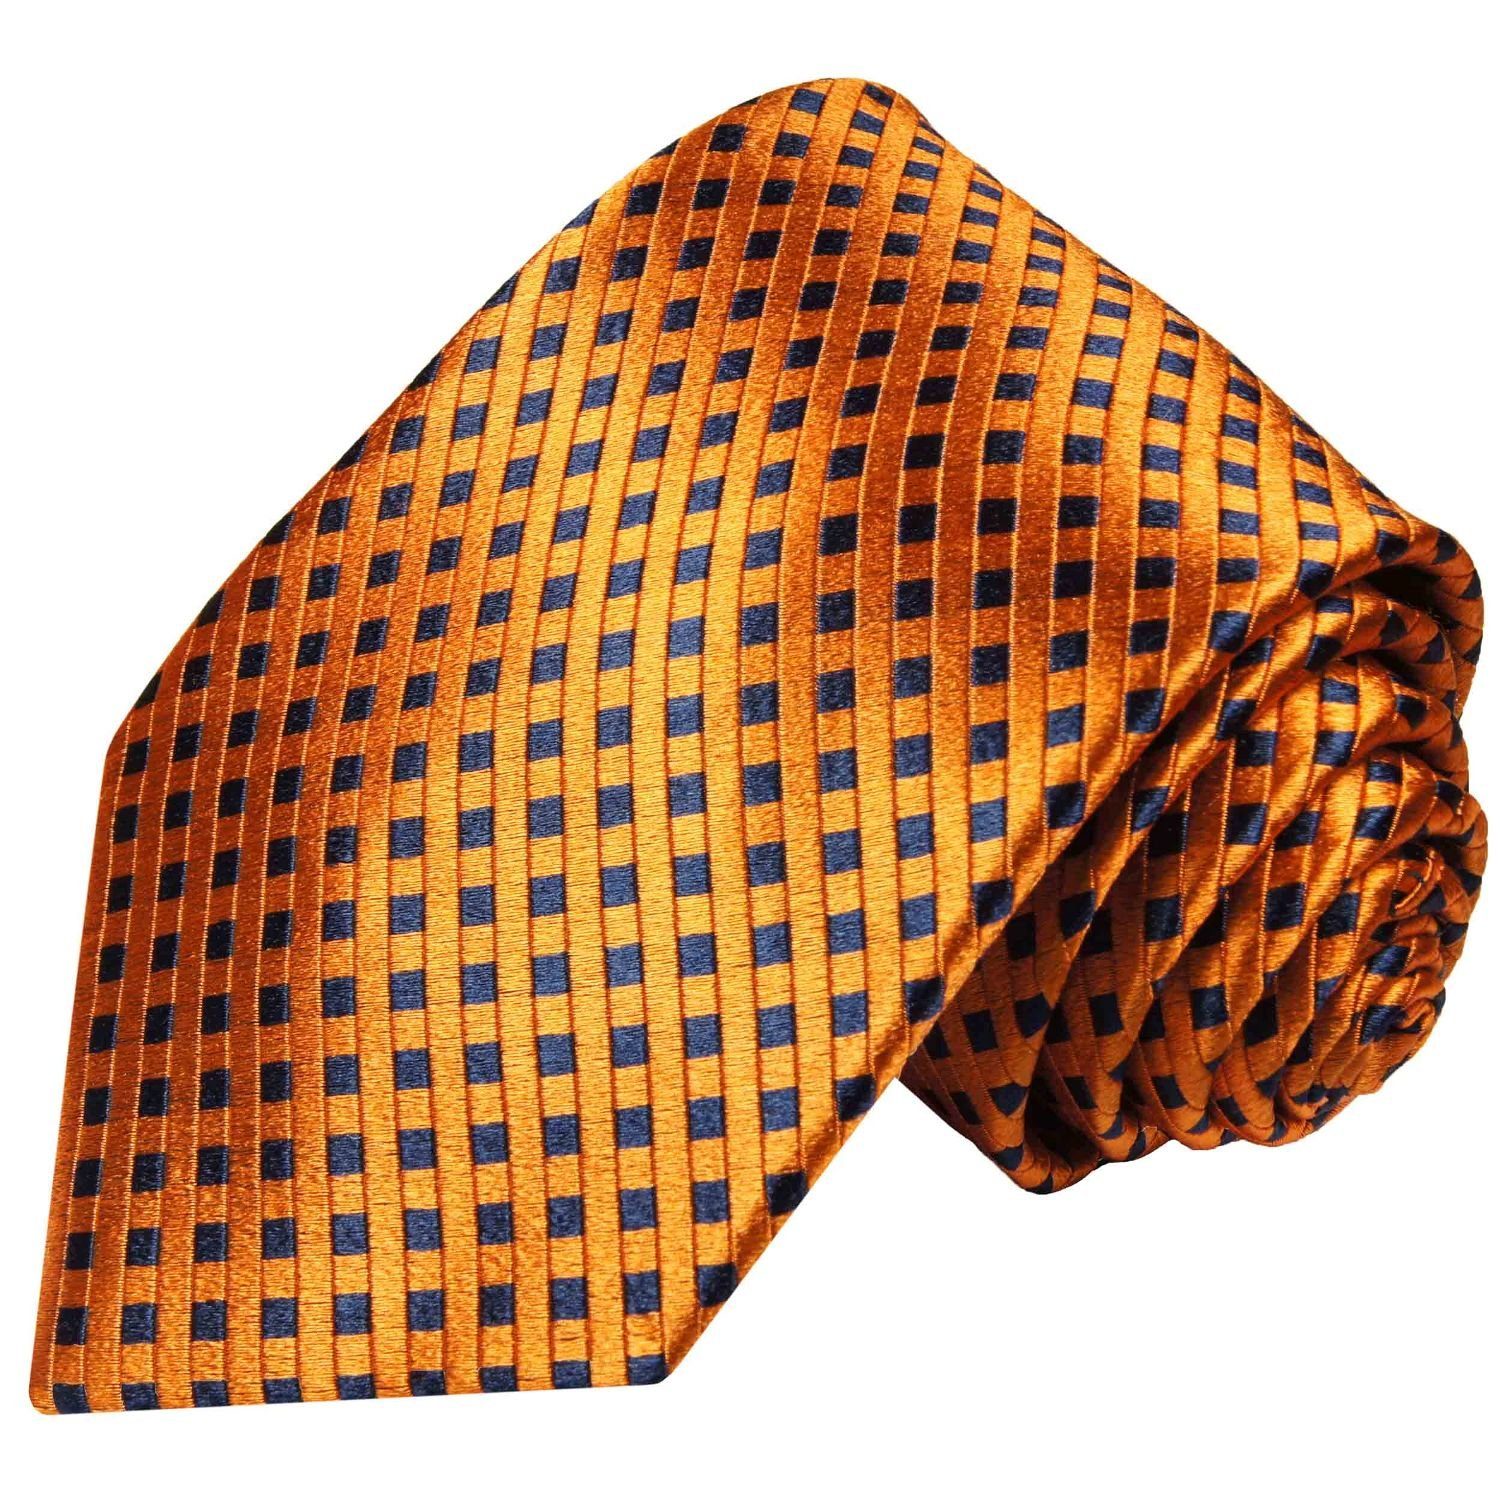 Paul Malone Krawatte Herren Seidenkrawatte Schlips modern kleine Karos 100% Seide Breit (8cm), orange bronze blau 310